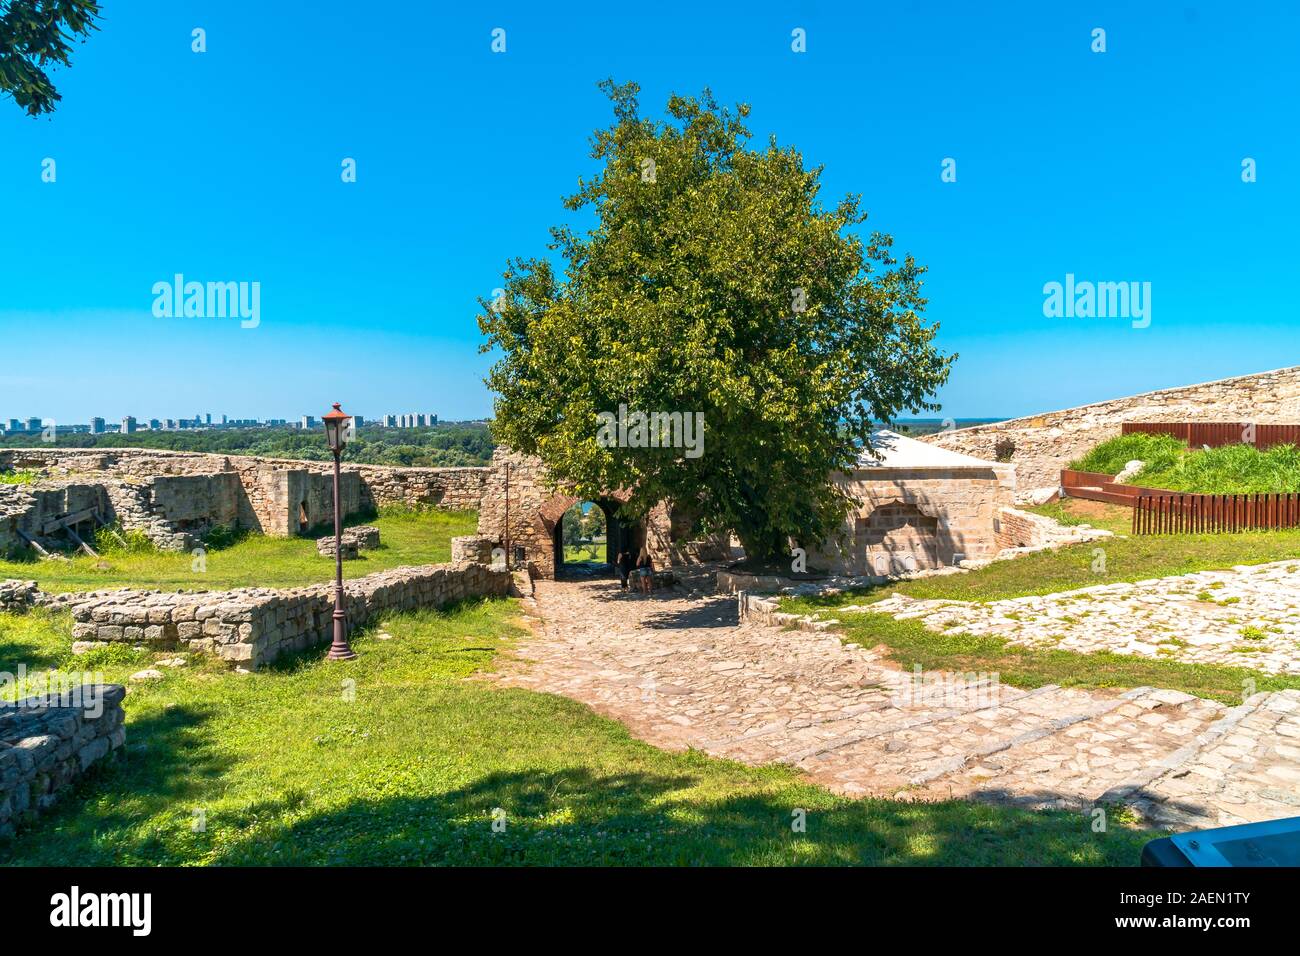 Belgrado, Serbia - 10 agosto 2019 : rovine storiche di Kalemegdan, luogo storico di Belgrado. Si tratta di uno dei più famosi luoghi turistici. Foto Stock